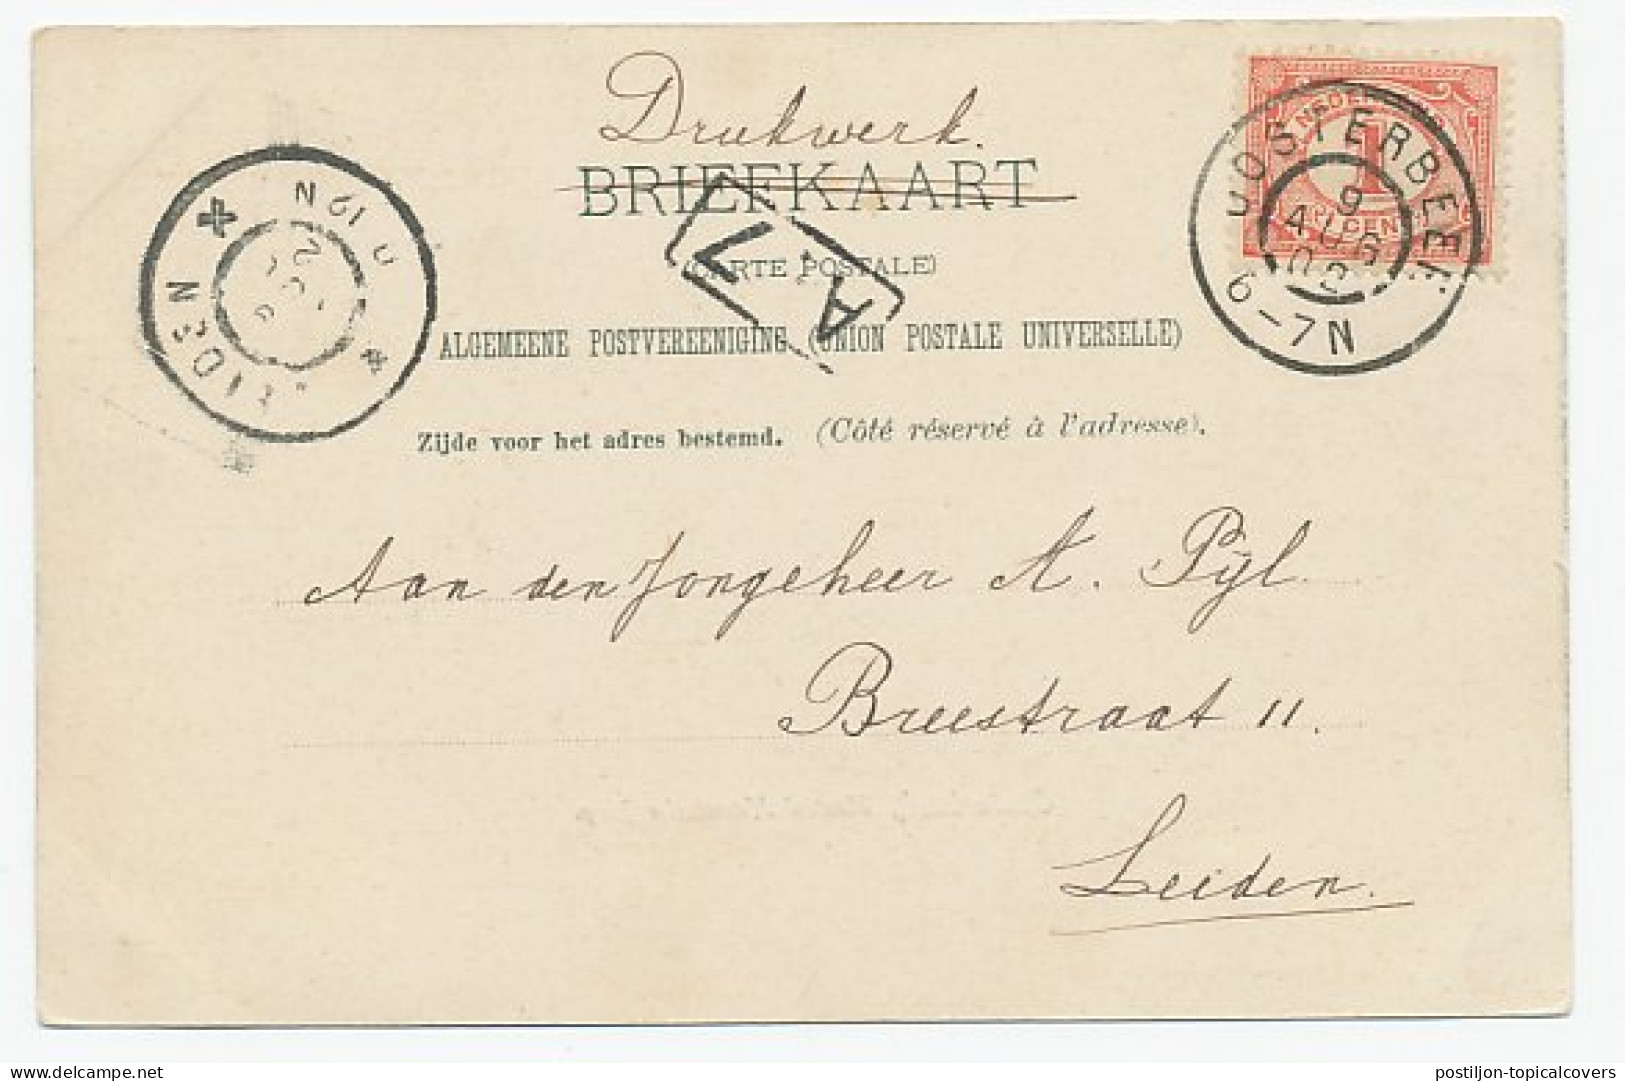 Grootrondstempel Oosterbeek 1902 - Non Classificati